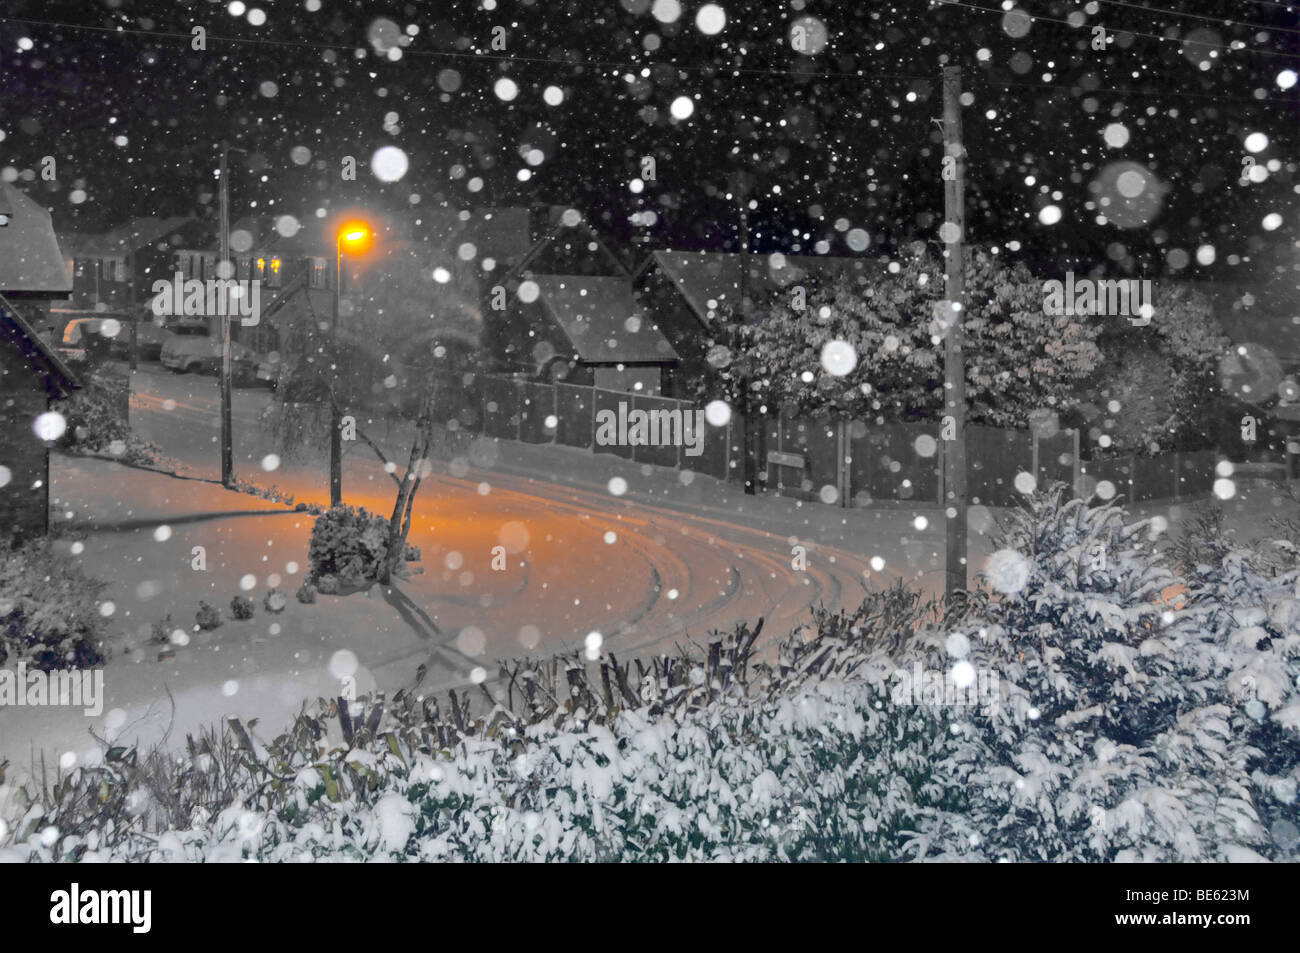 Nachtschneeflocken Kamera Blitz orange Lampenpfosten Licht auf schneebedeckte Straße in Wohnlandschaft manipuliert hauptsächlich schwarz-weiß England Großbritannien Stockfoto